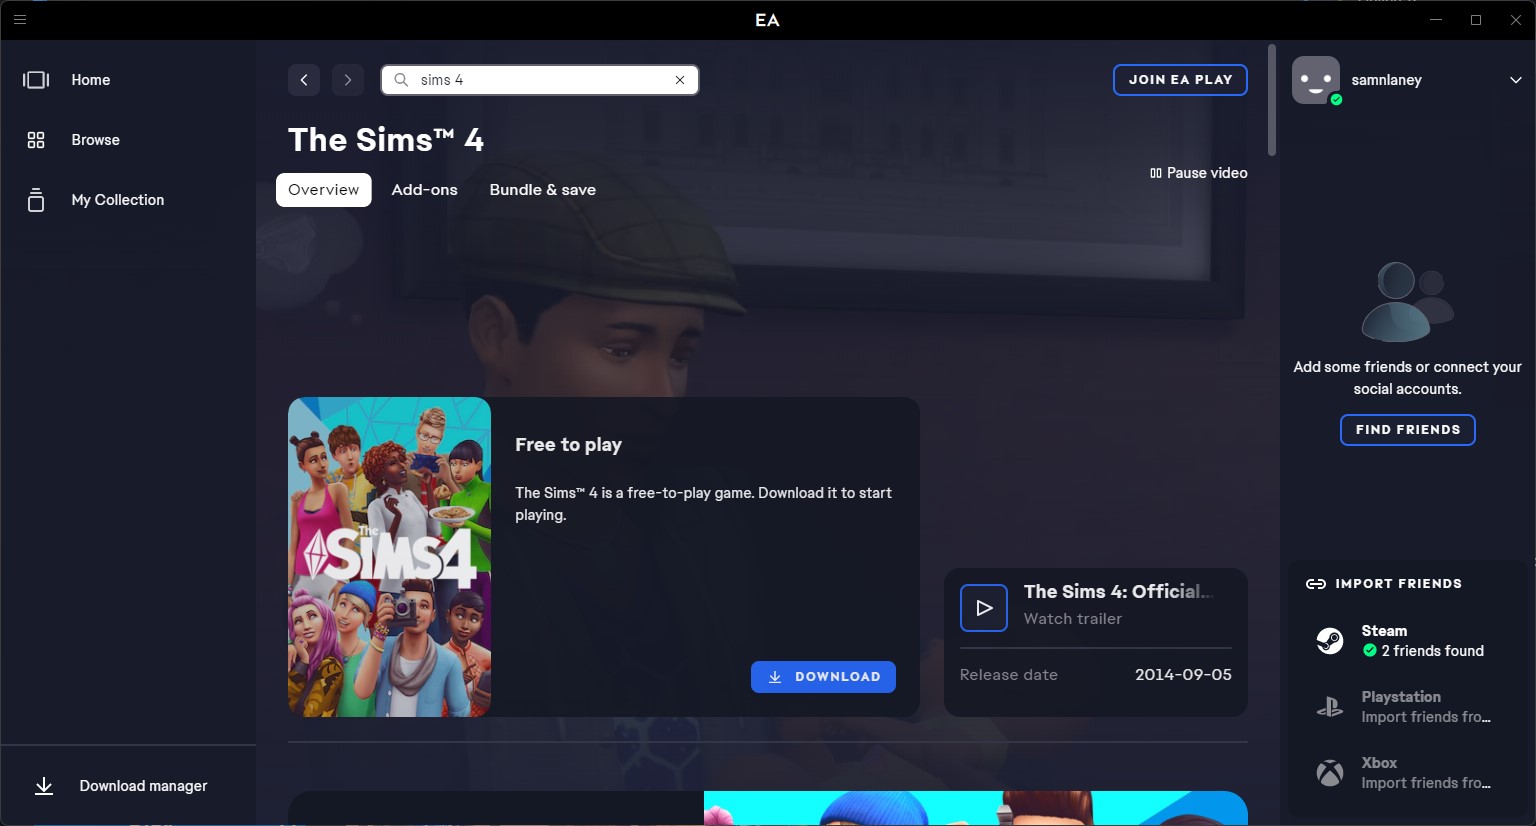 Sims 4 en la aplicación EA.